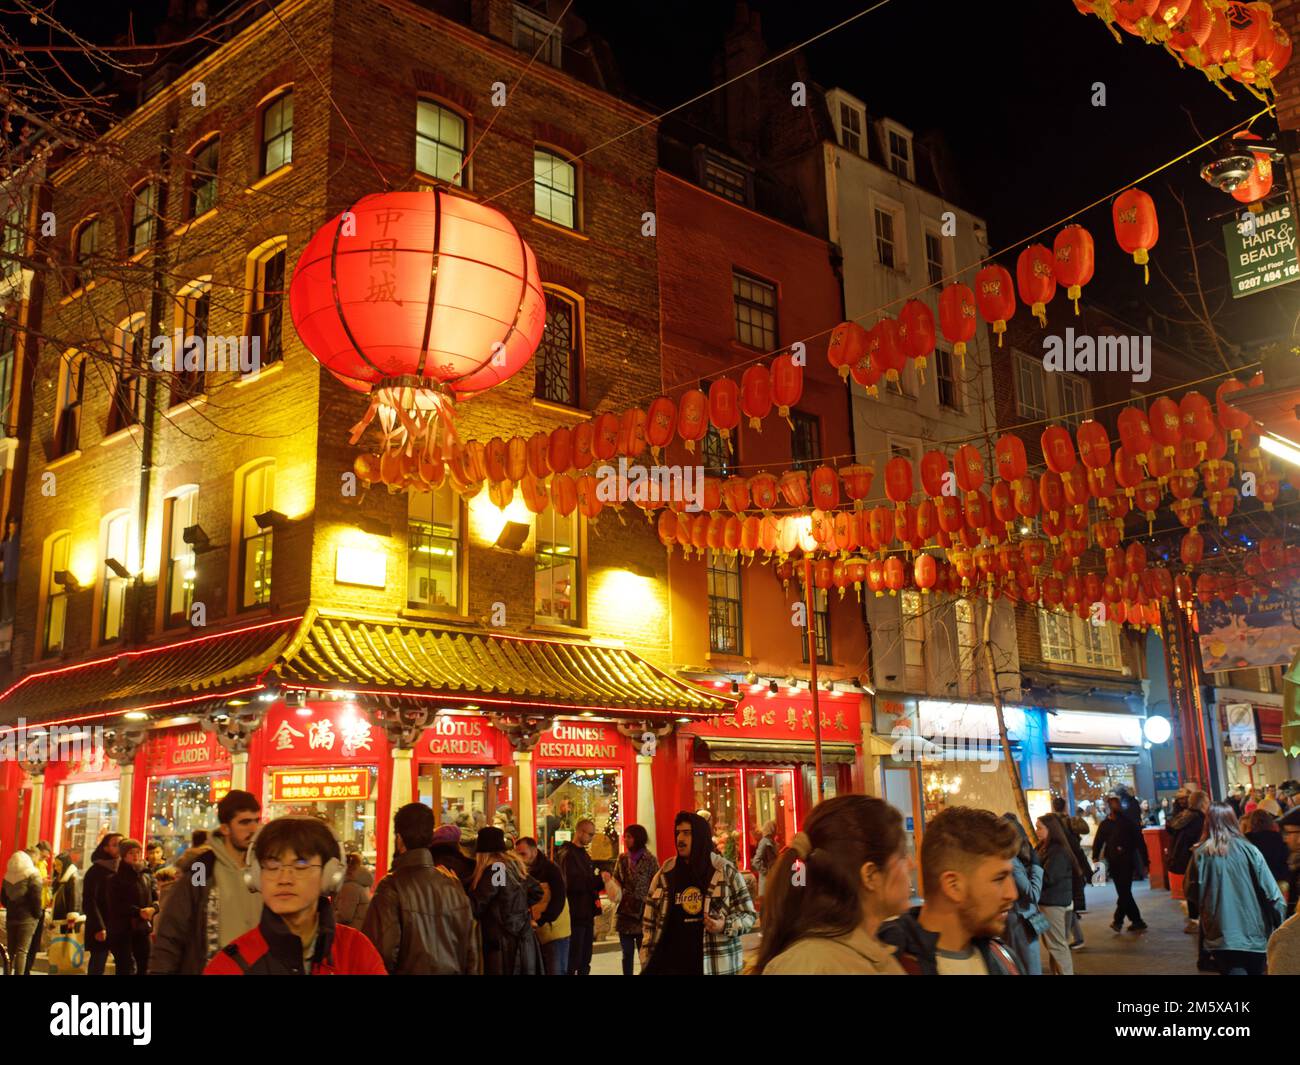 Une vue sur Gerrard Street occupé la nuit dans le quartier chinois de Londres décoré de lanternes rouges suspendues Banque D'Images